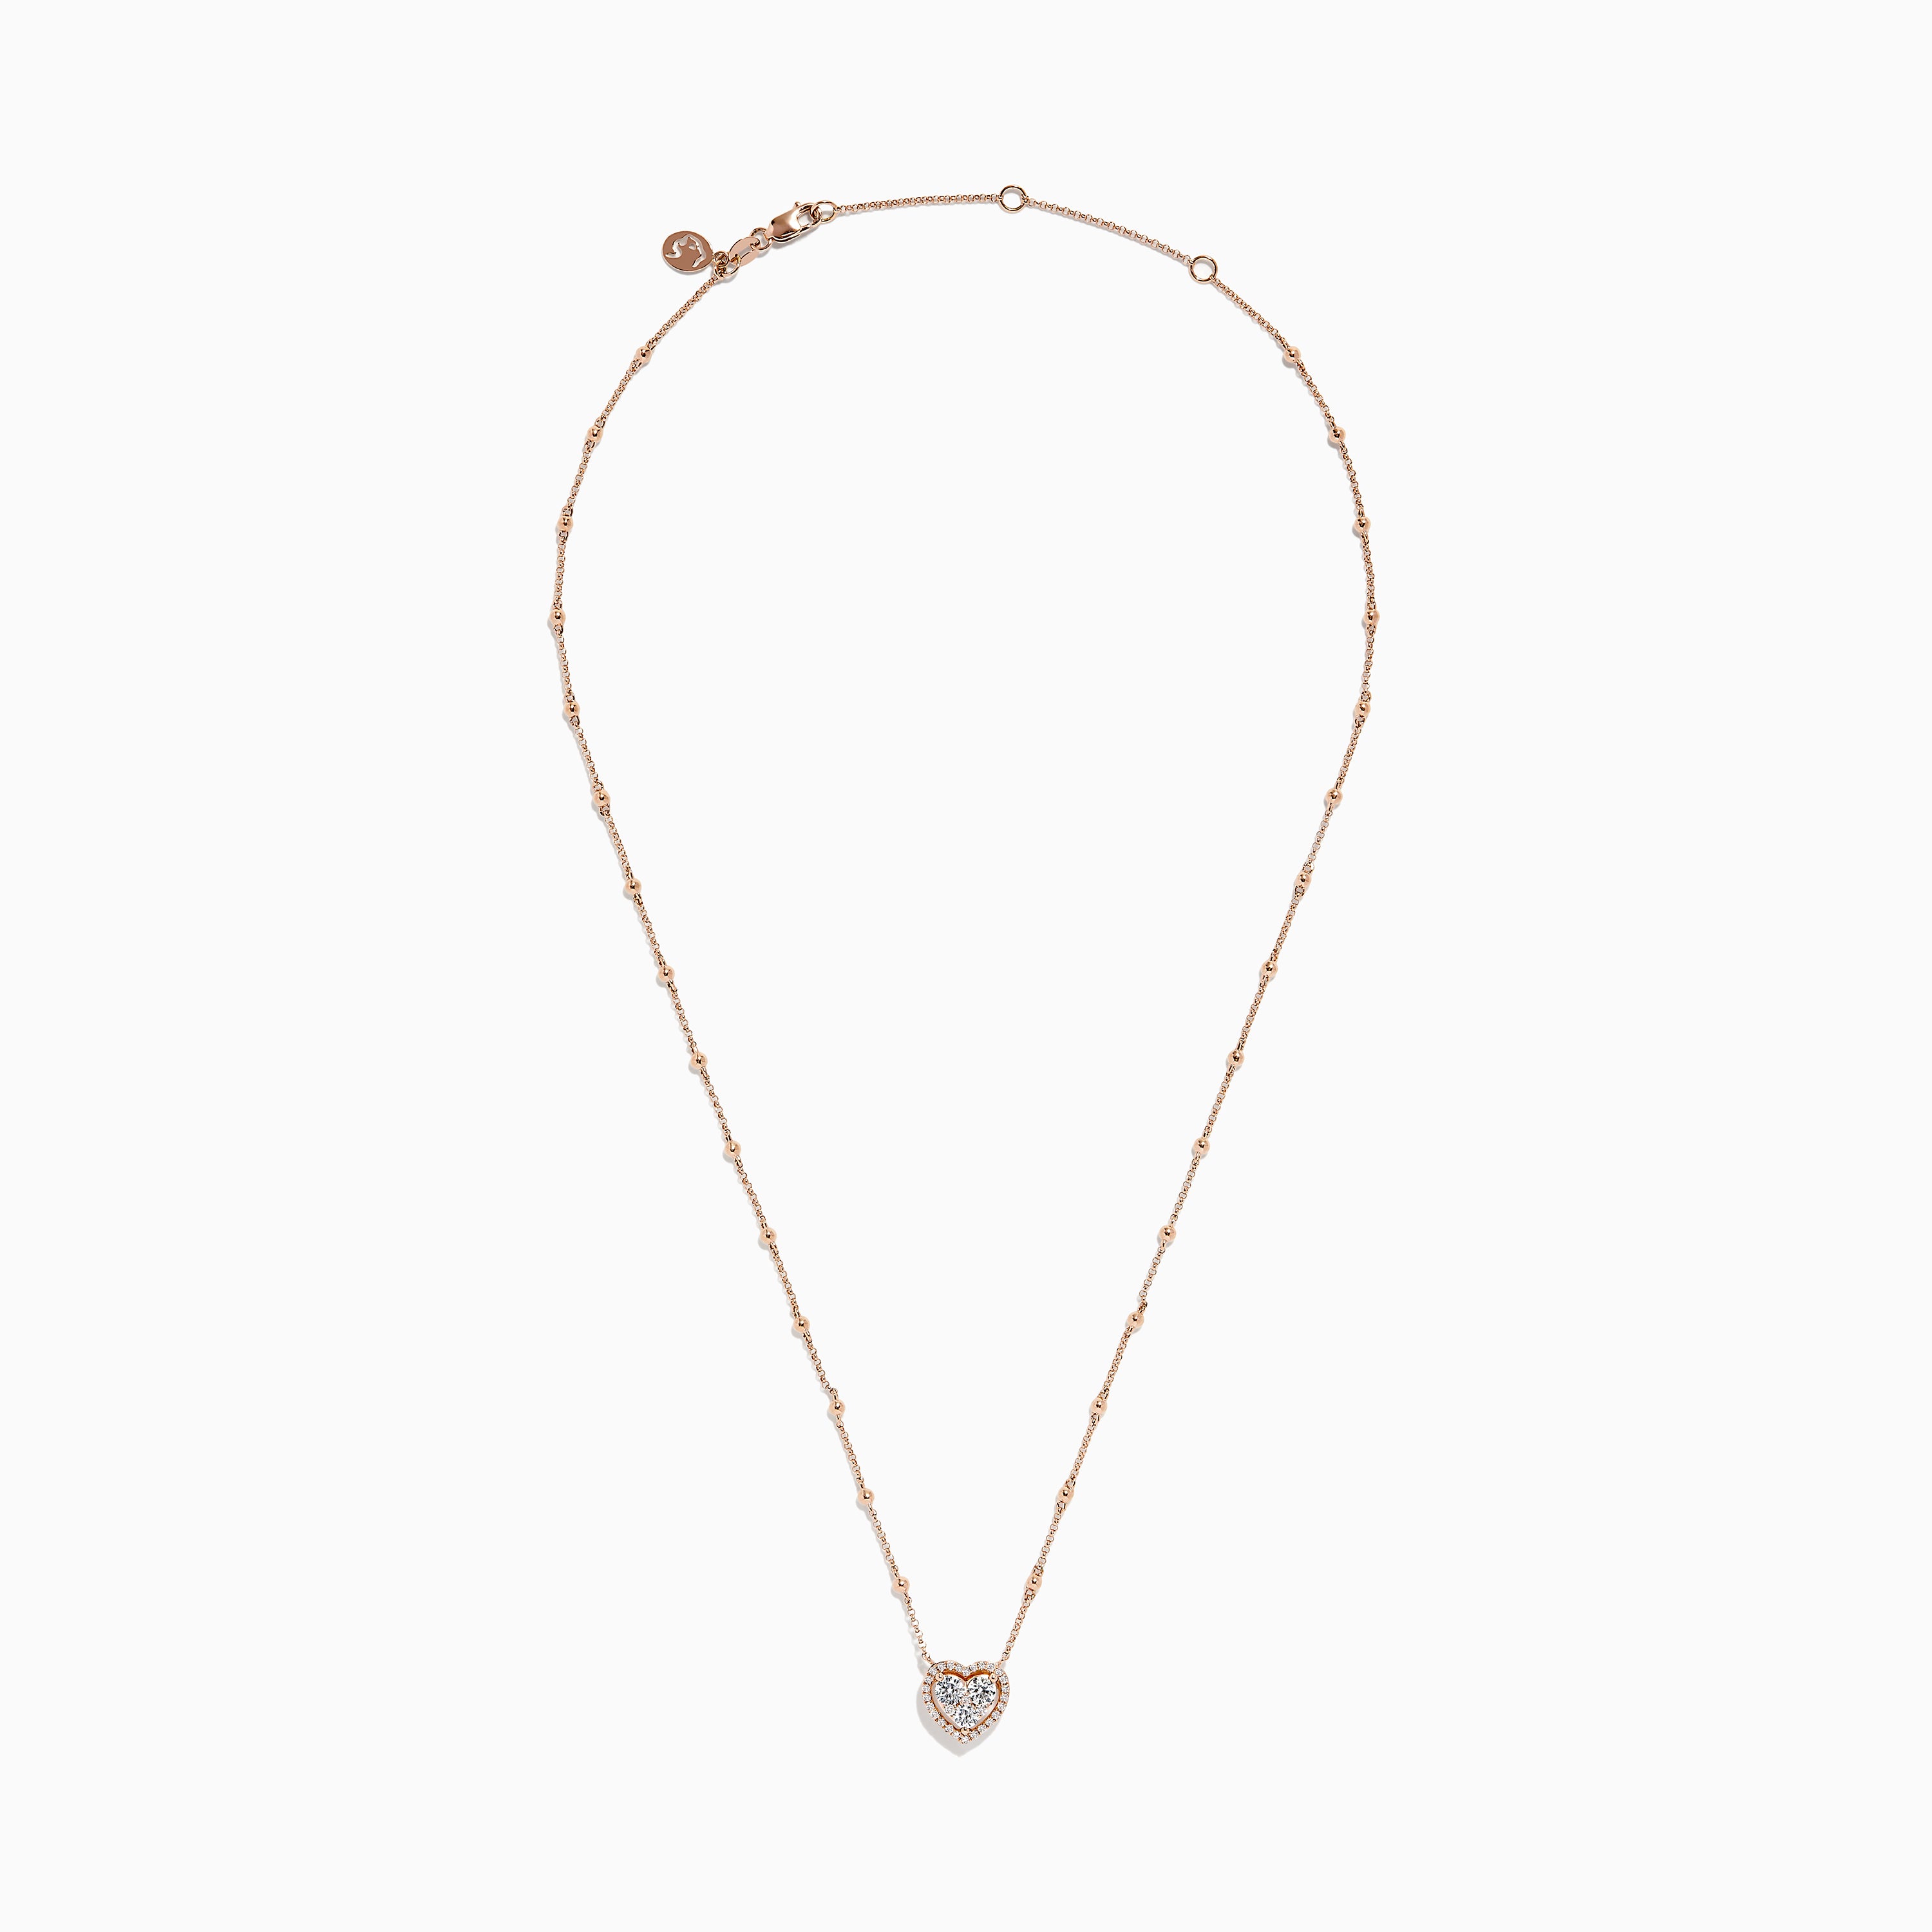 Effy Novelty 14K Rose Gold Diamond Heart Necklace, 0.64 TCW